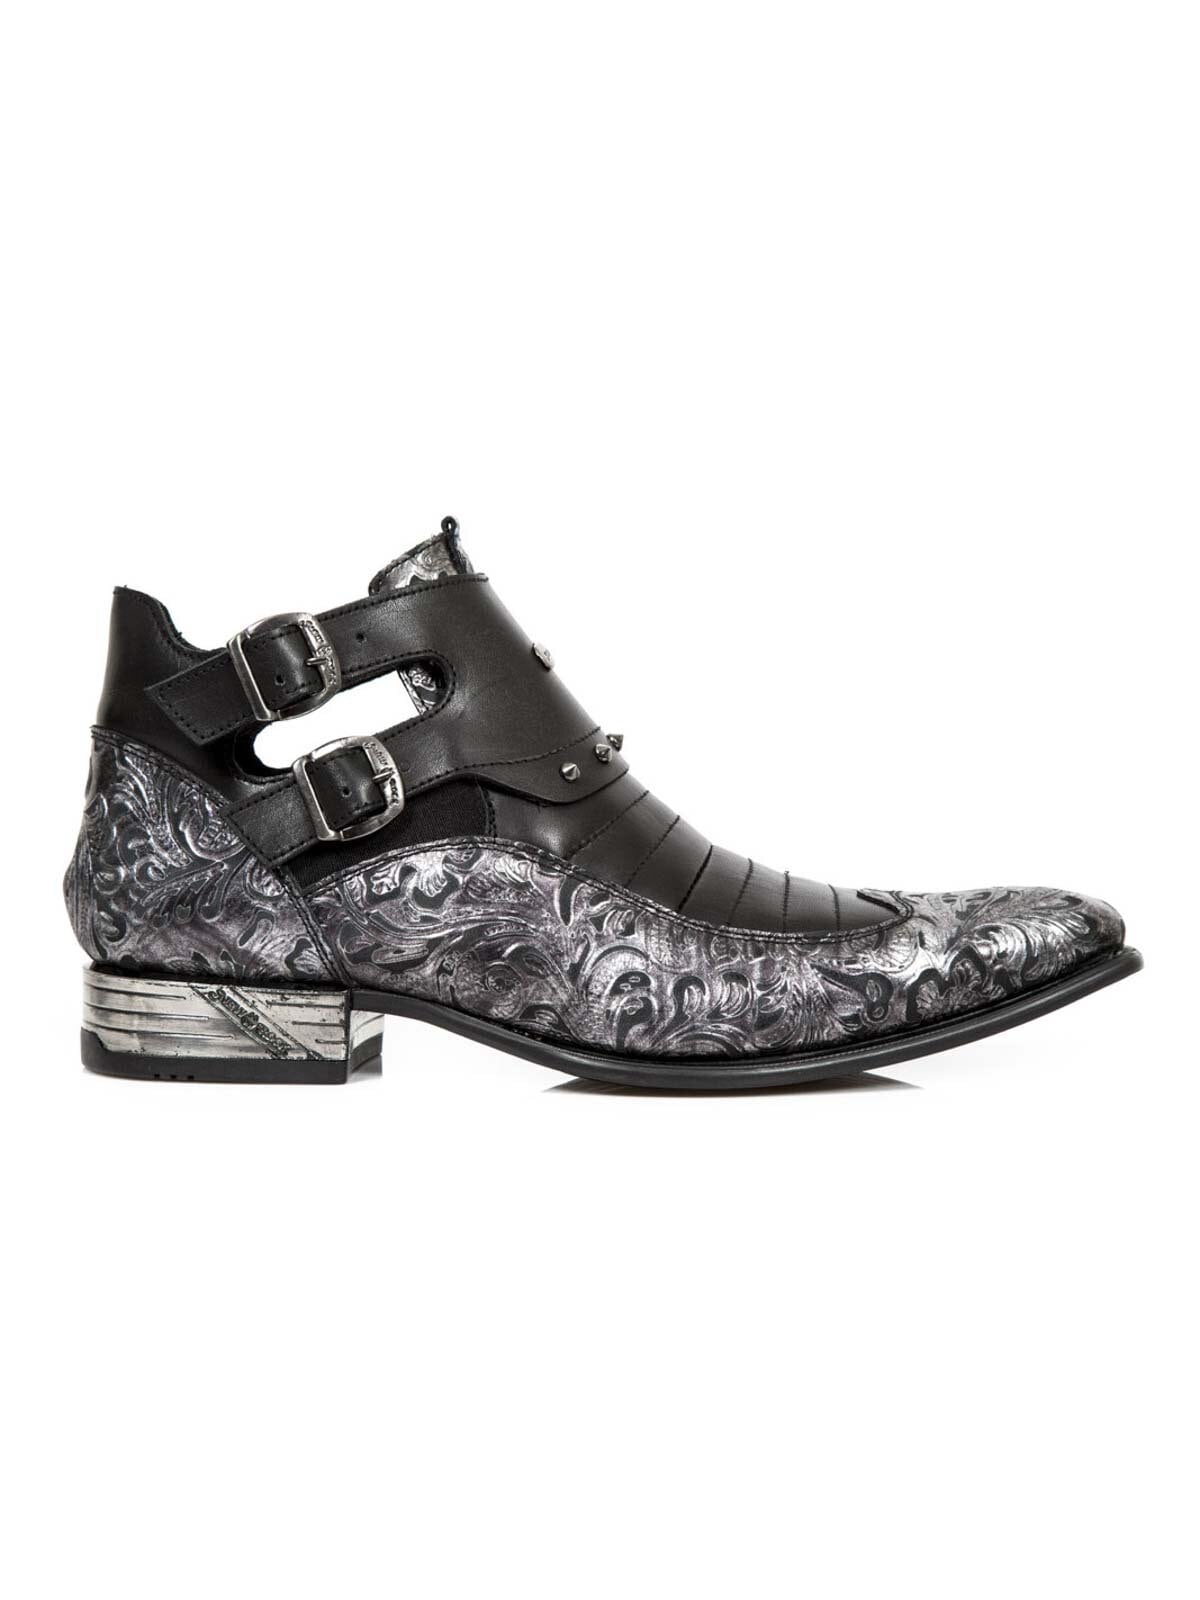 Flanagan New Rock Boots - Svart/Silver